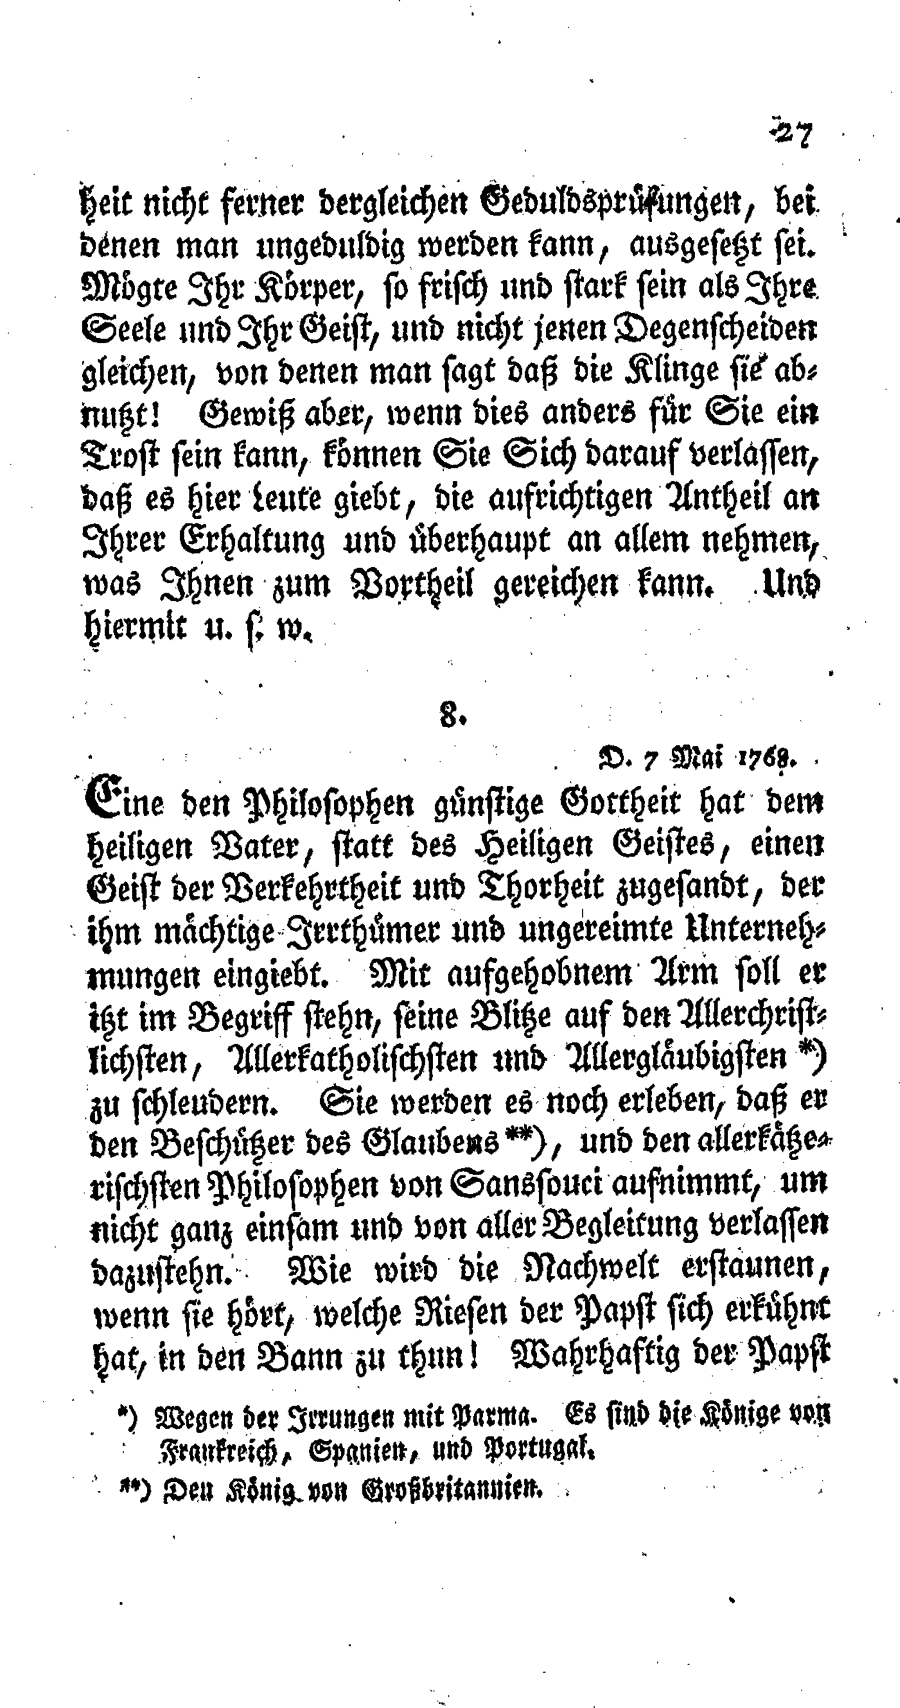 S. 27, Obj. 2